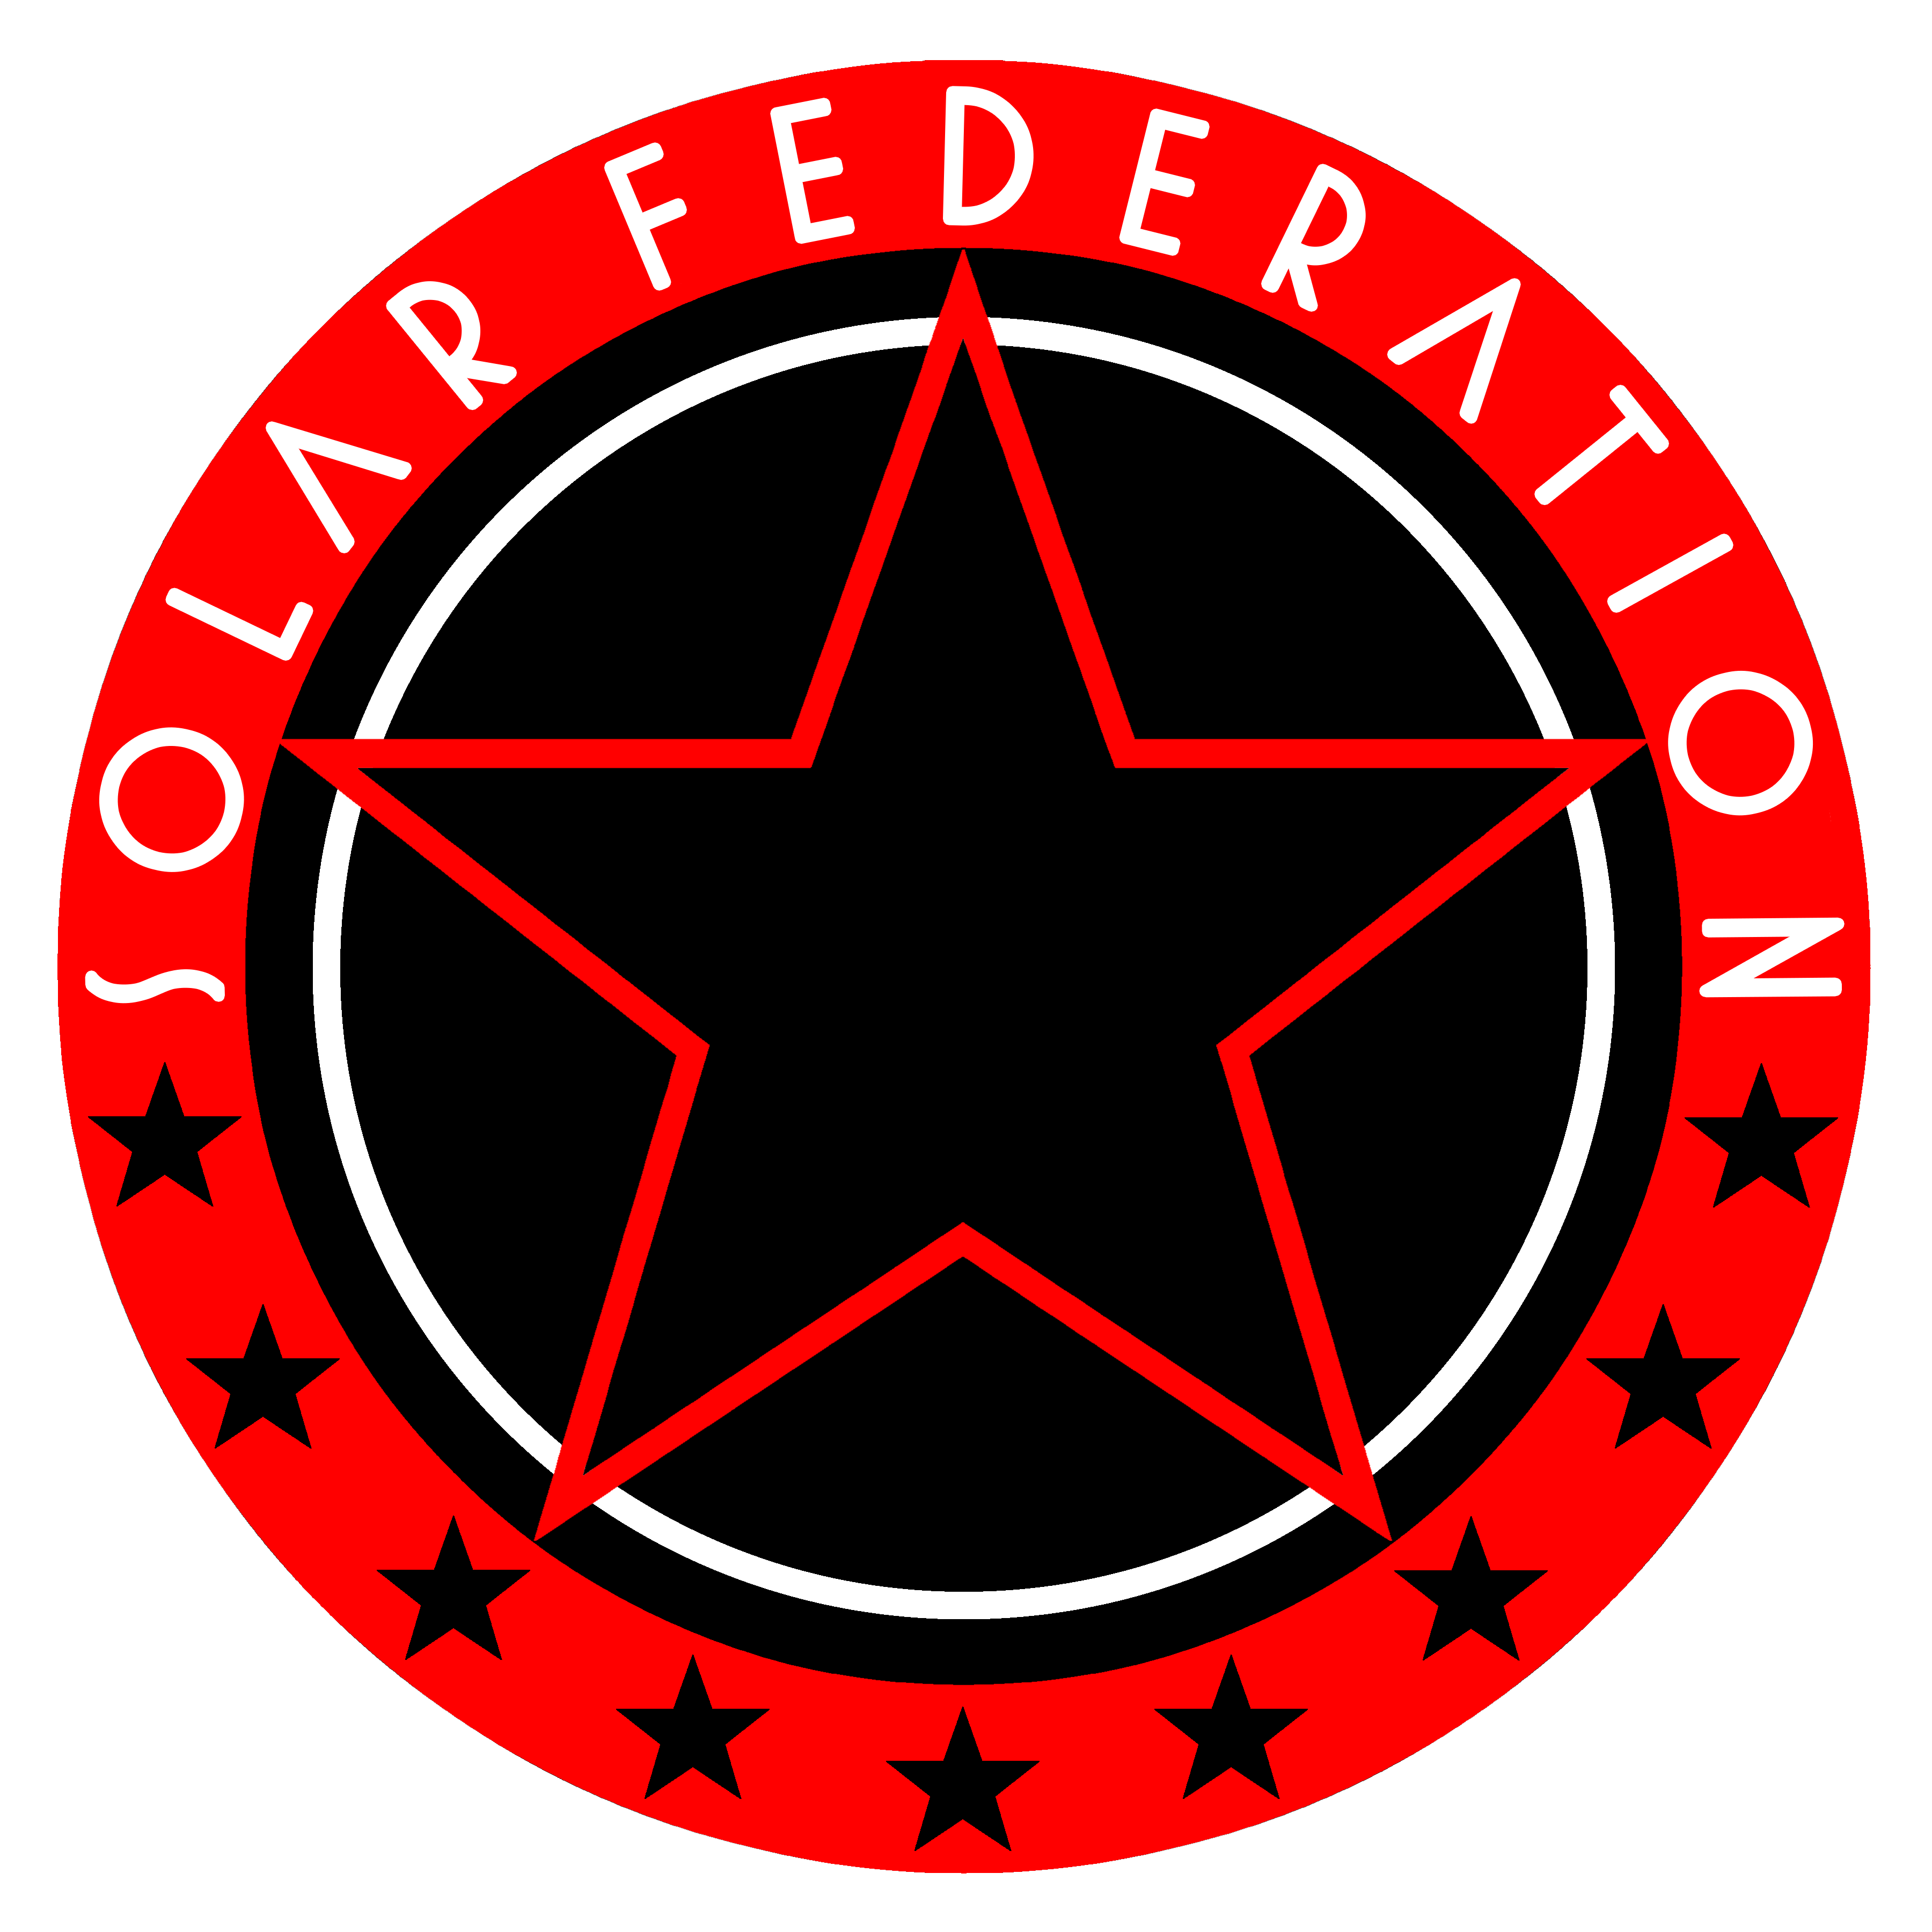 Solar Federation